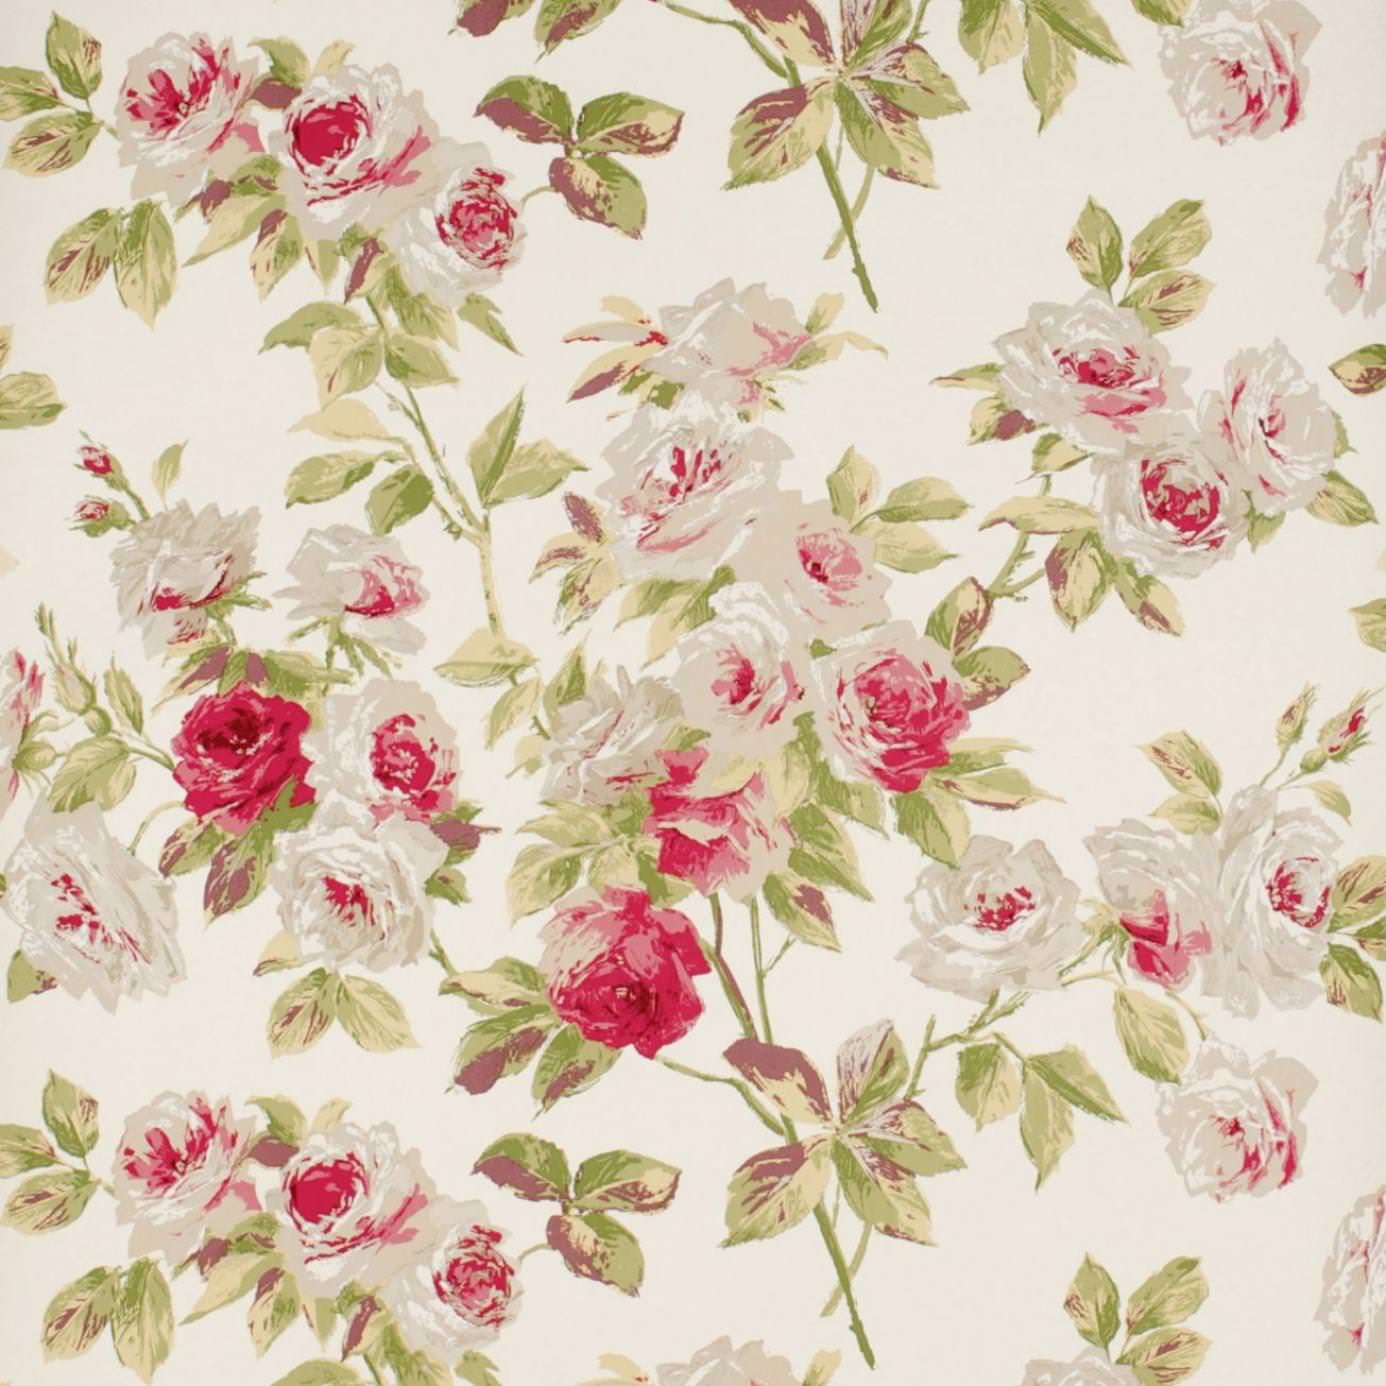 Free Vintage Floral Background Wallpaper